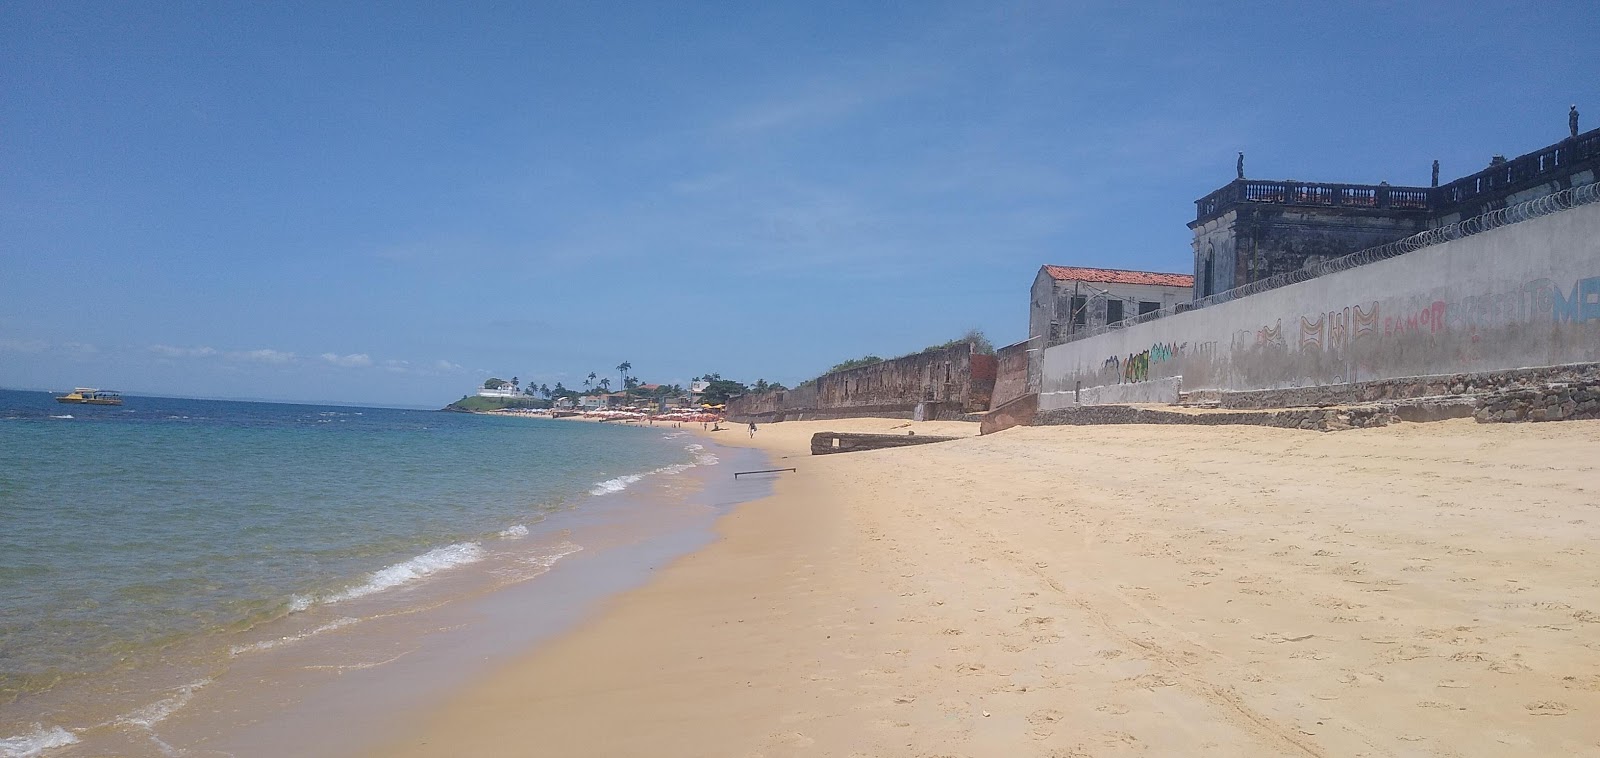 Praia da Boa Viagem'in fotoğrafı geniş plaj ile birlikte